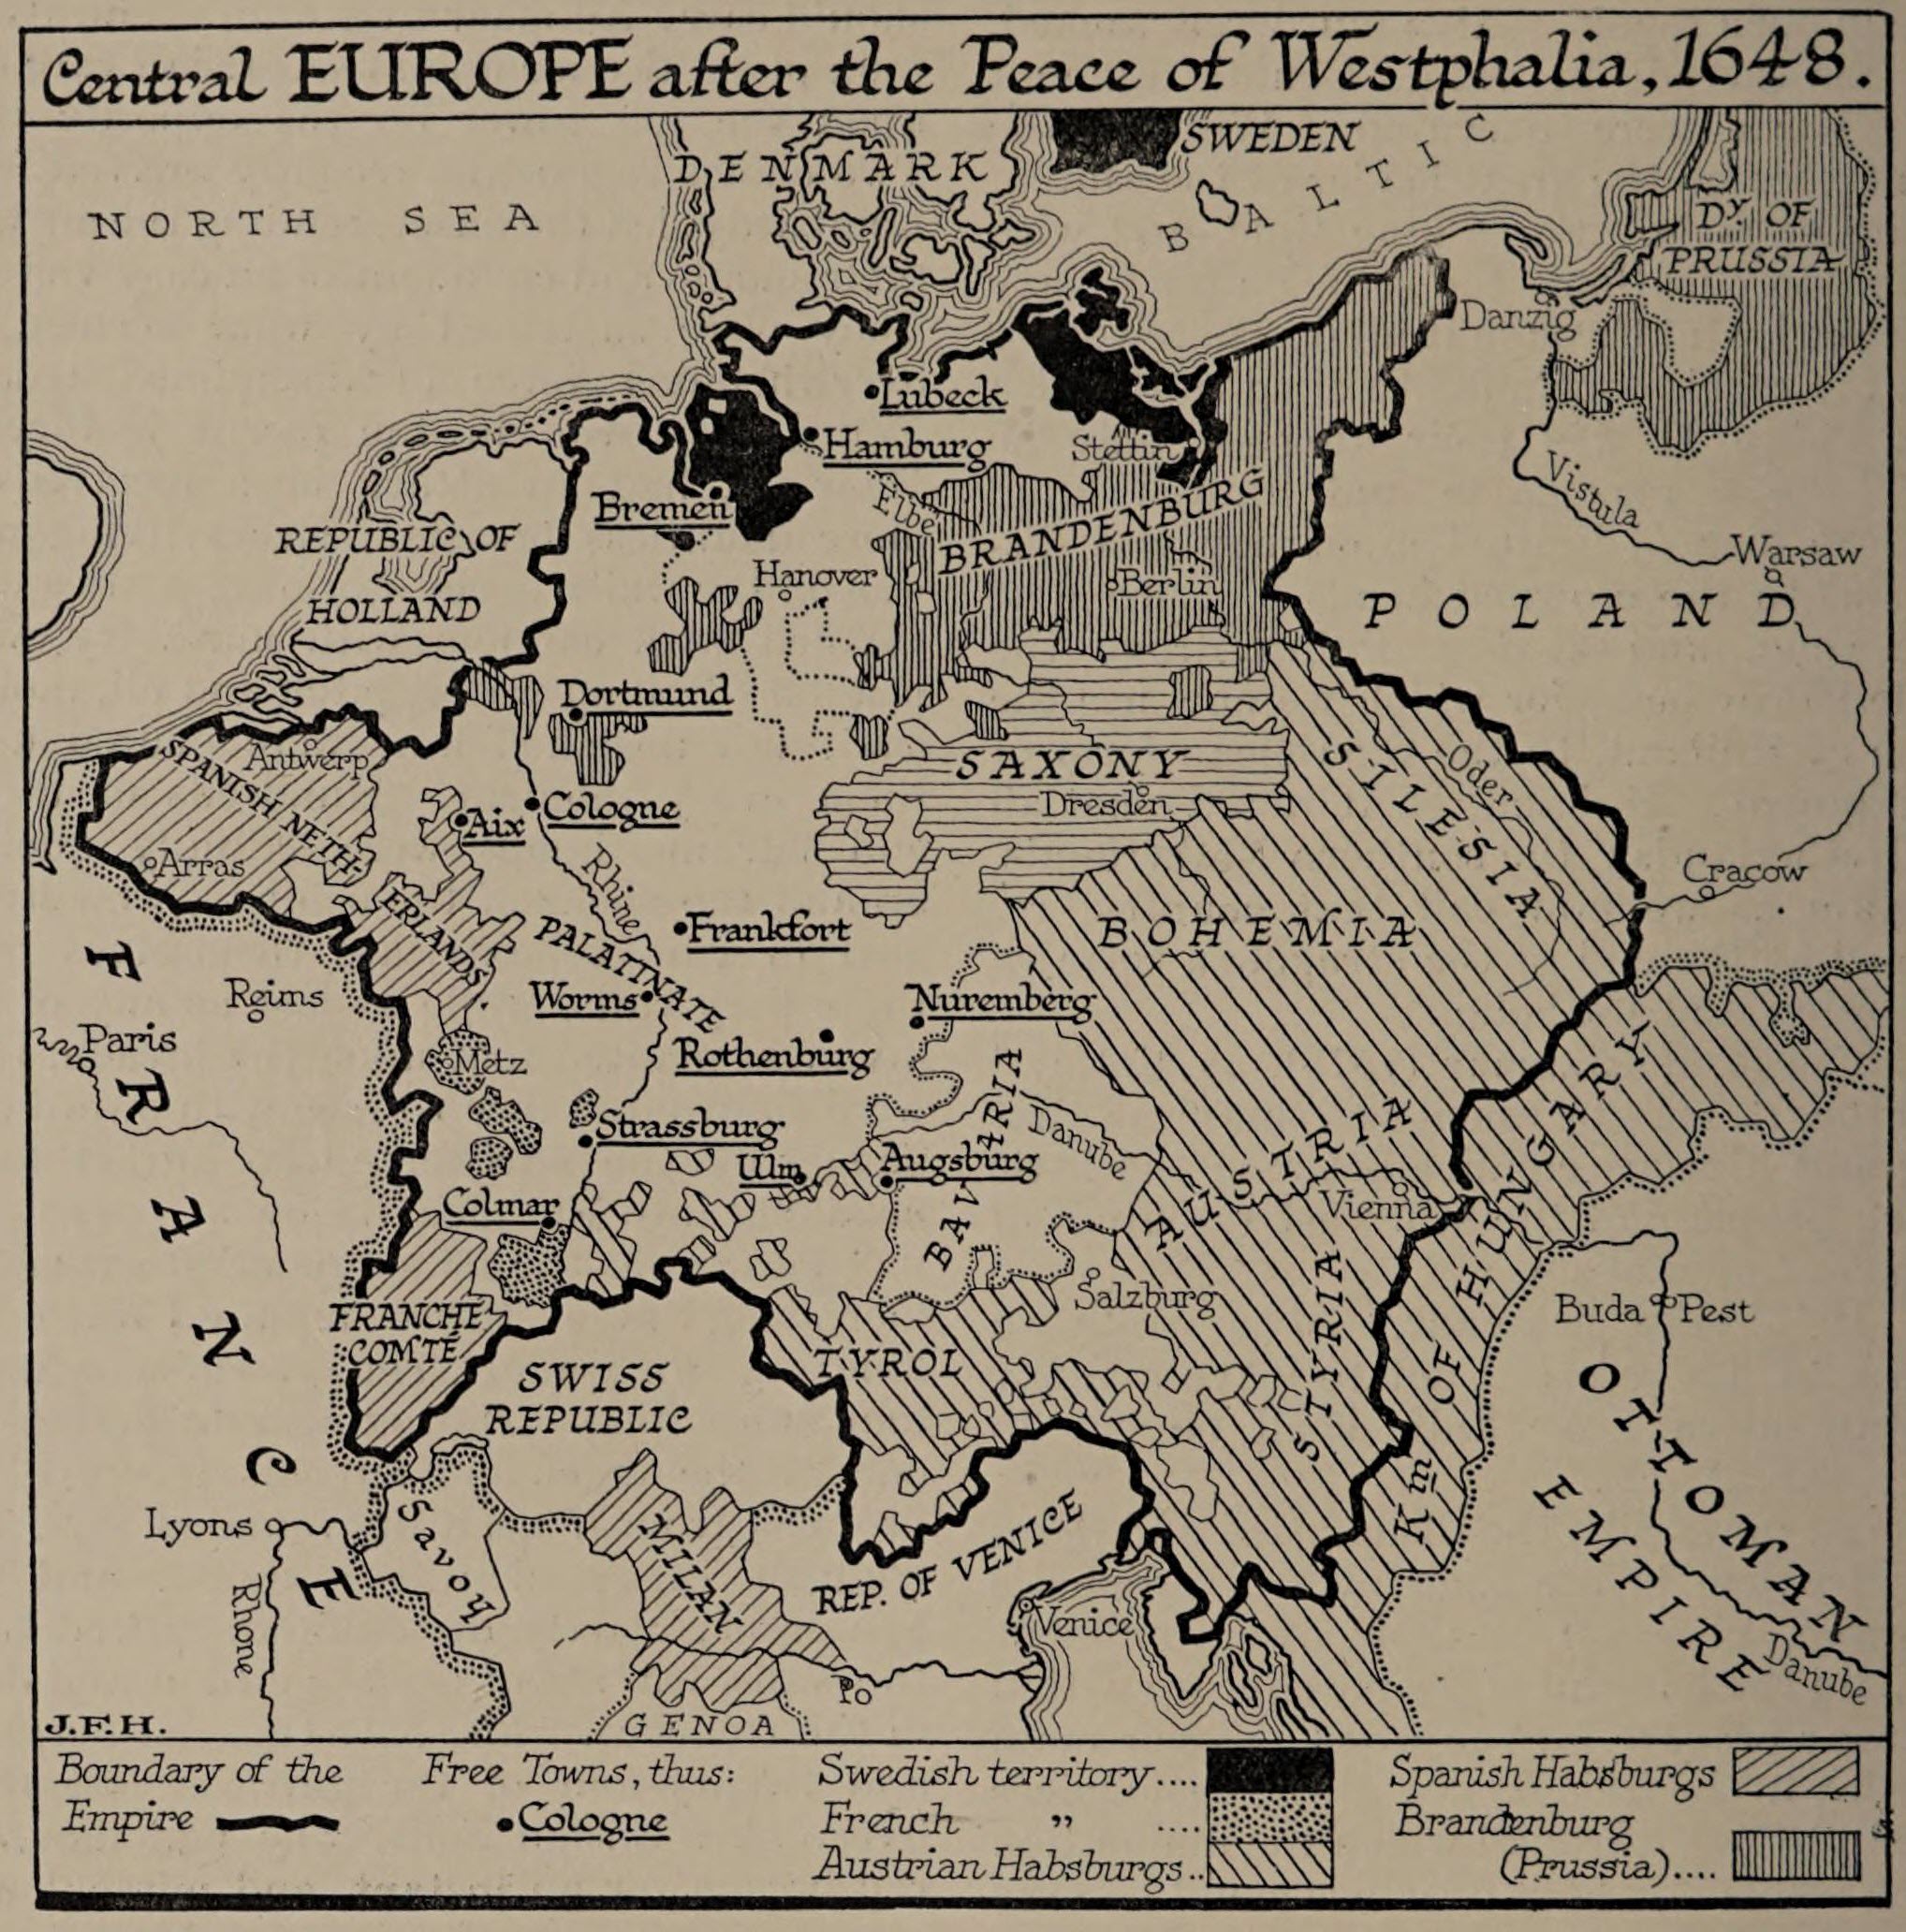 Вестфальский мир 1648